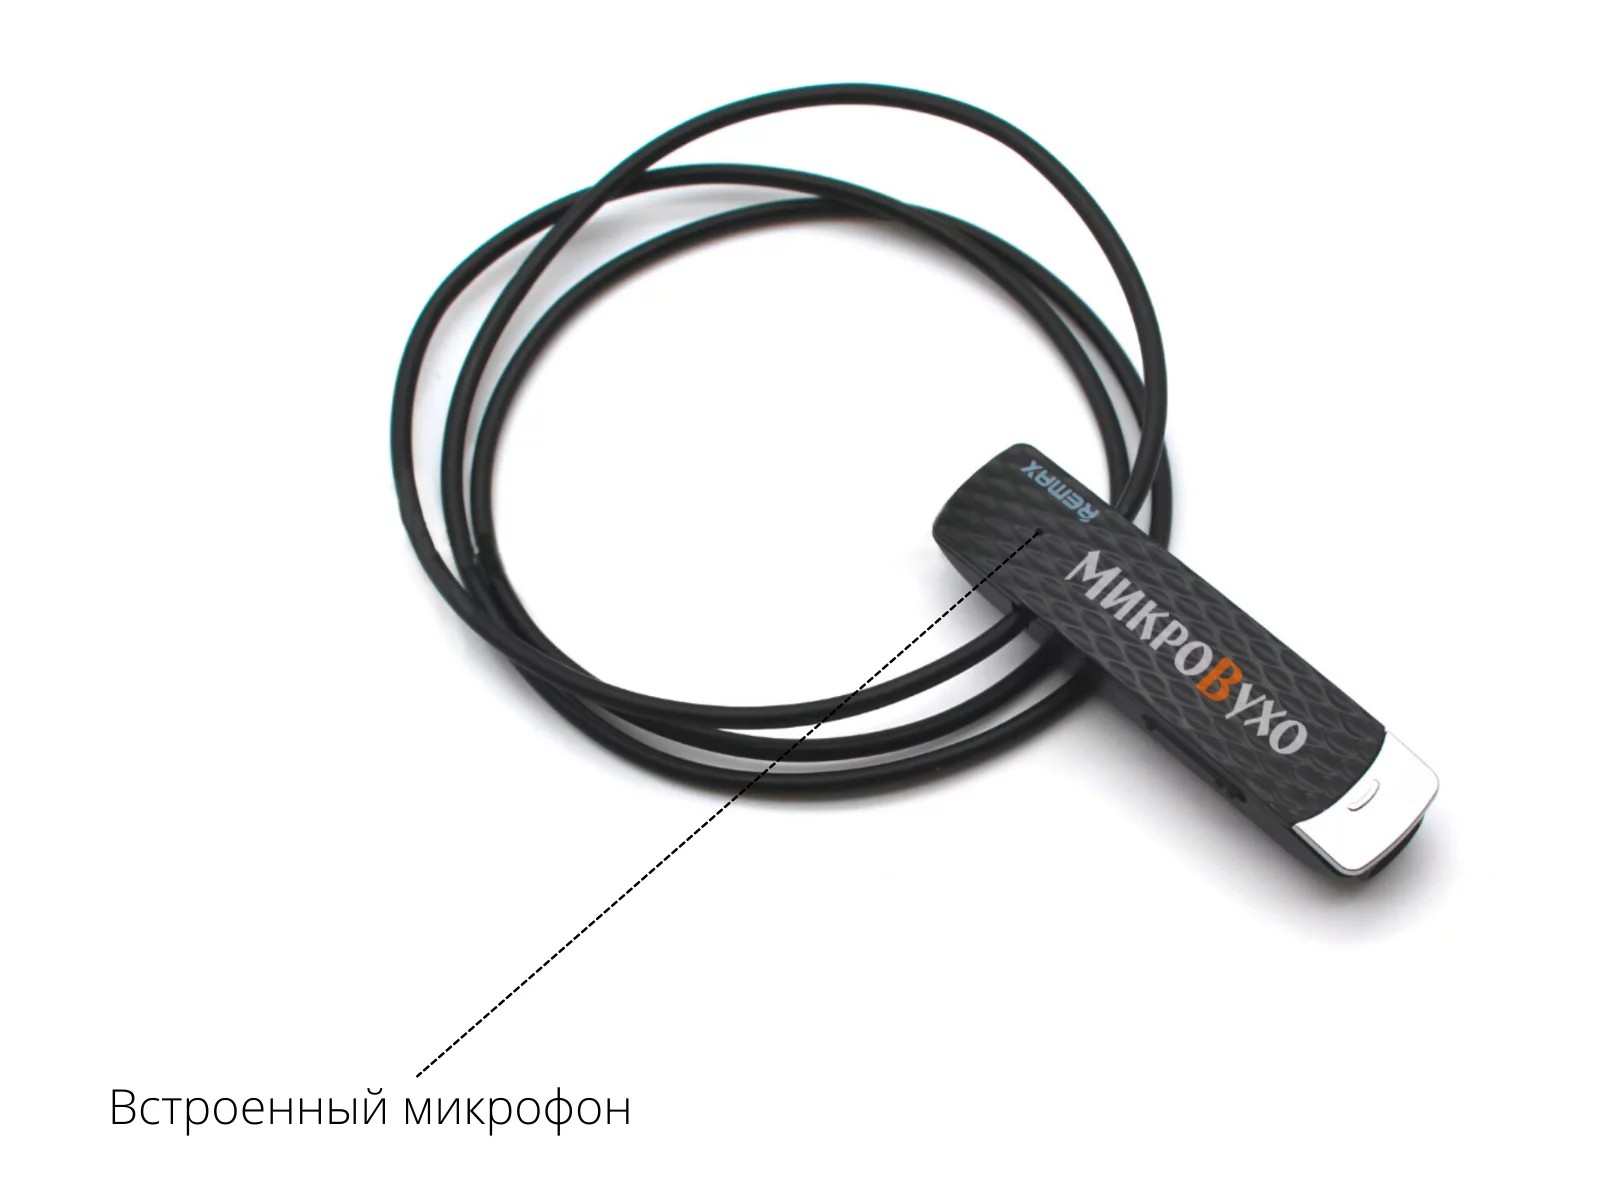 Гарнитура Bluetooth Remax с магнитными микронаушниками 2 мм - изображение 6